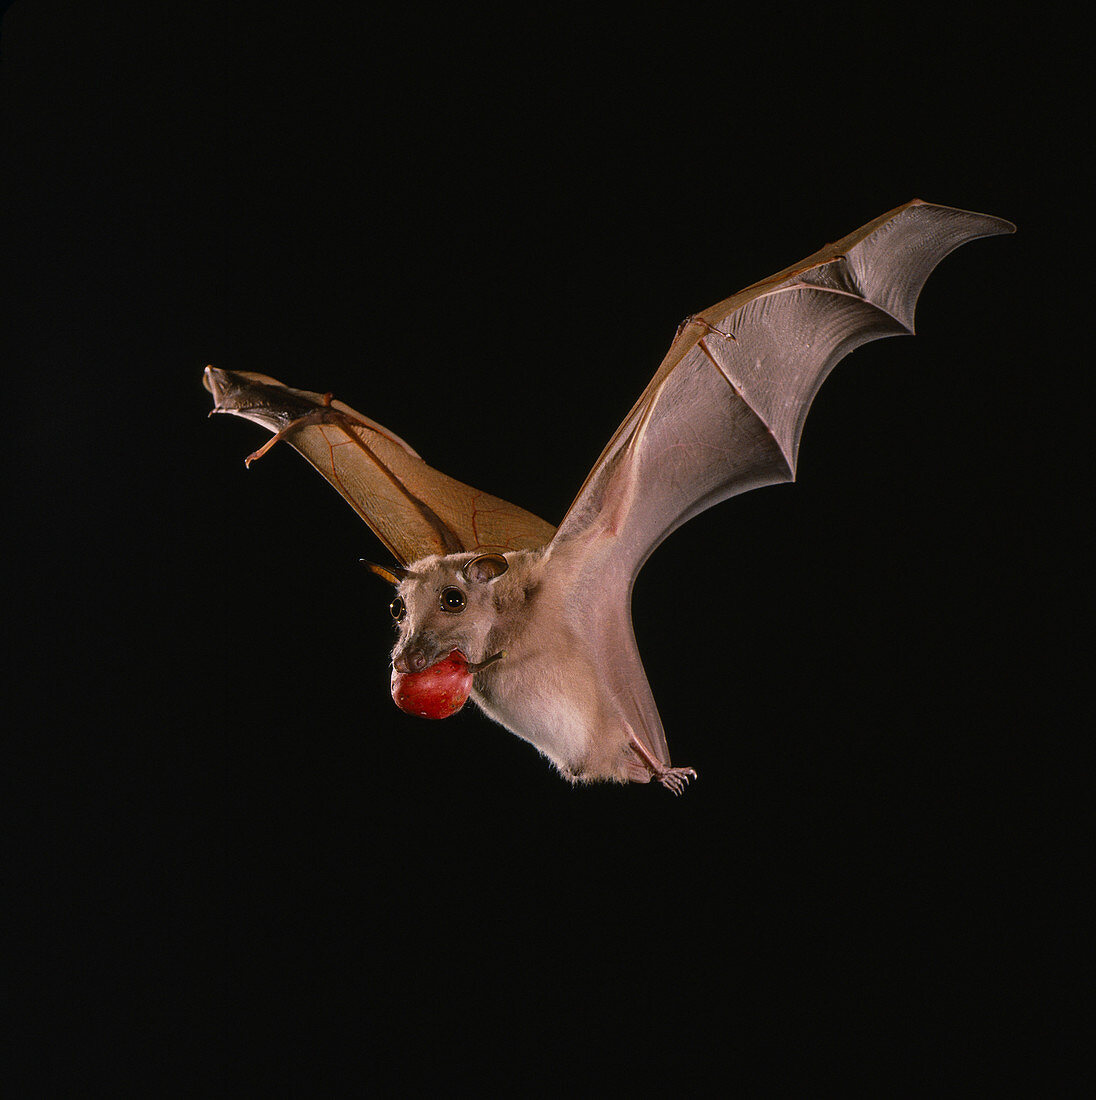 Little epauletted fruit bat (E. minor)